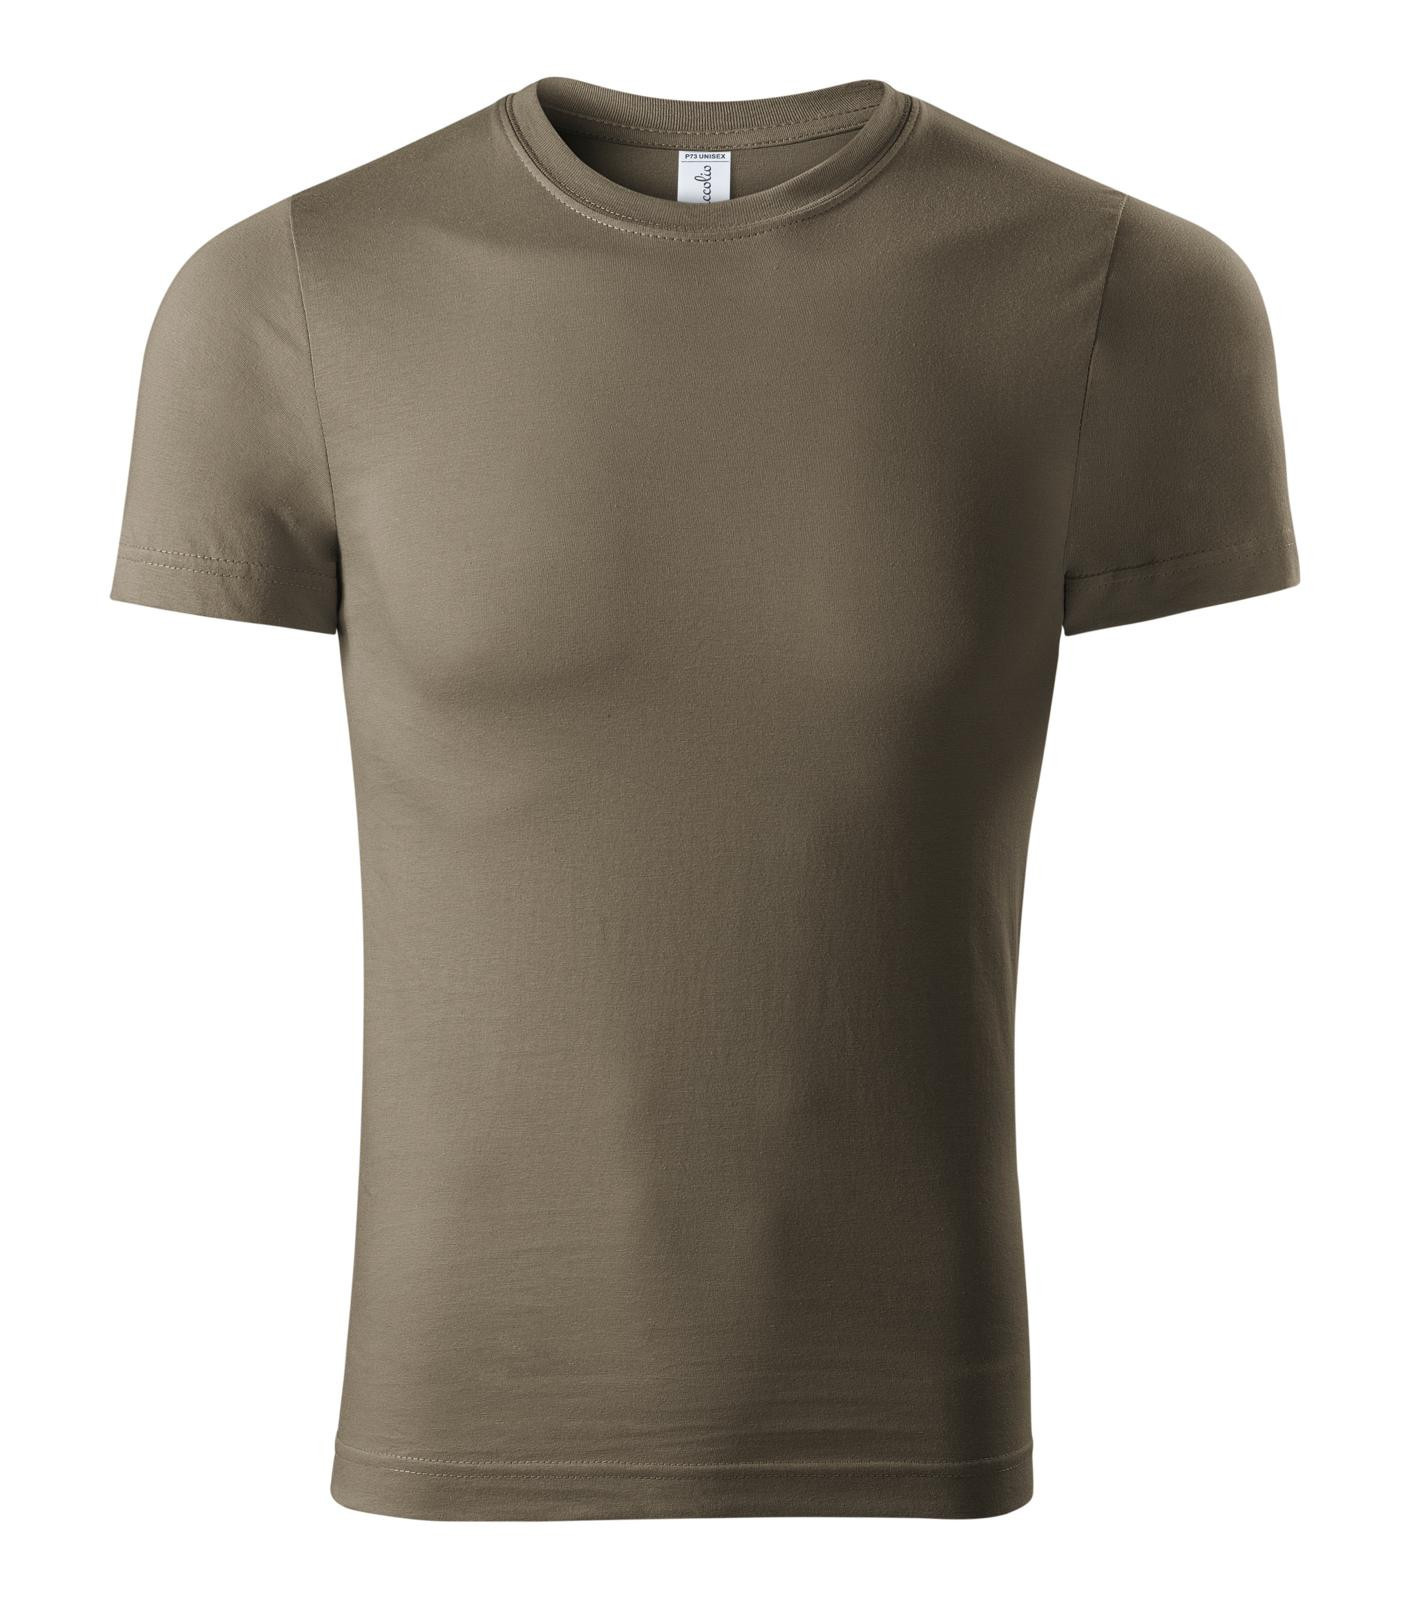 Unisex tričko Piccolio Paint P73 - veľkosť: 3XL, farba: army